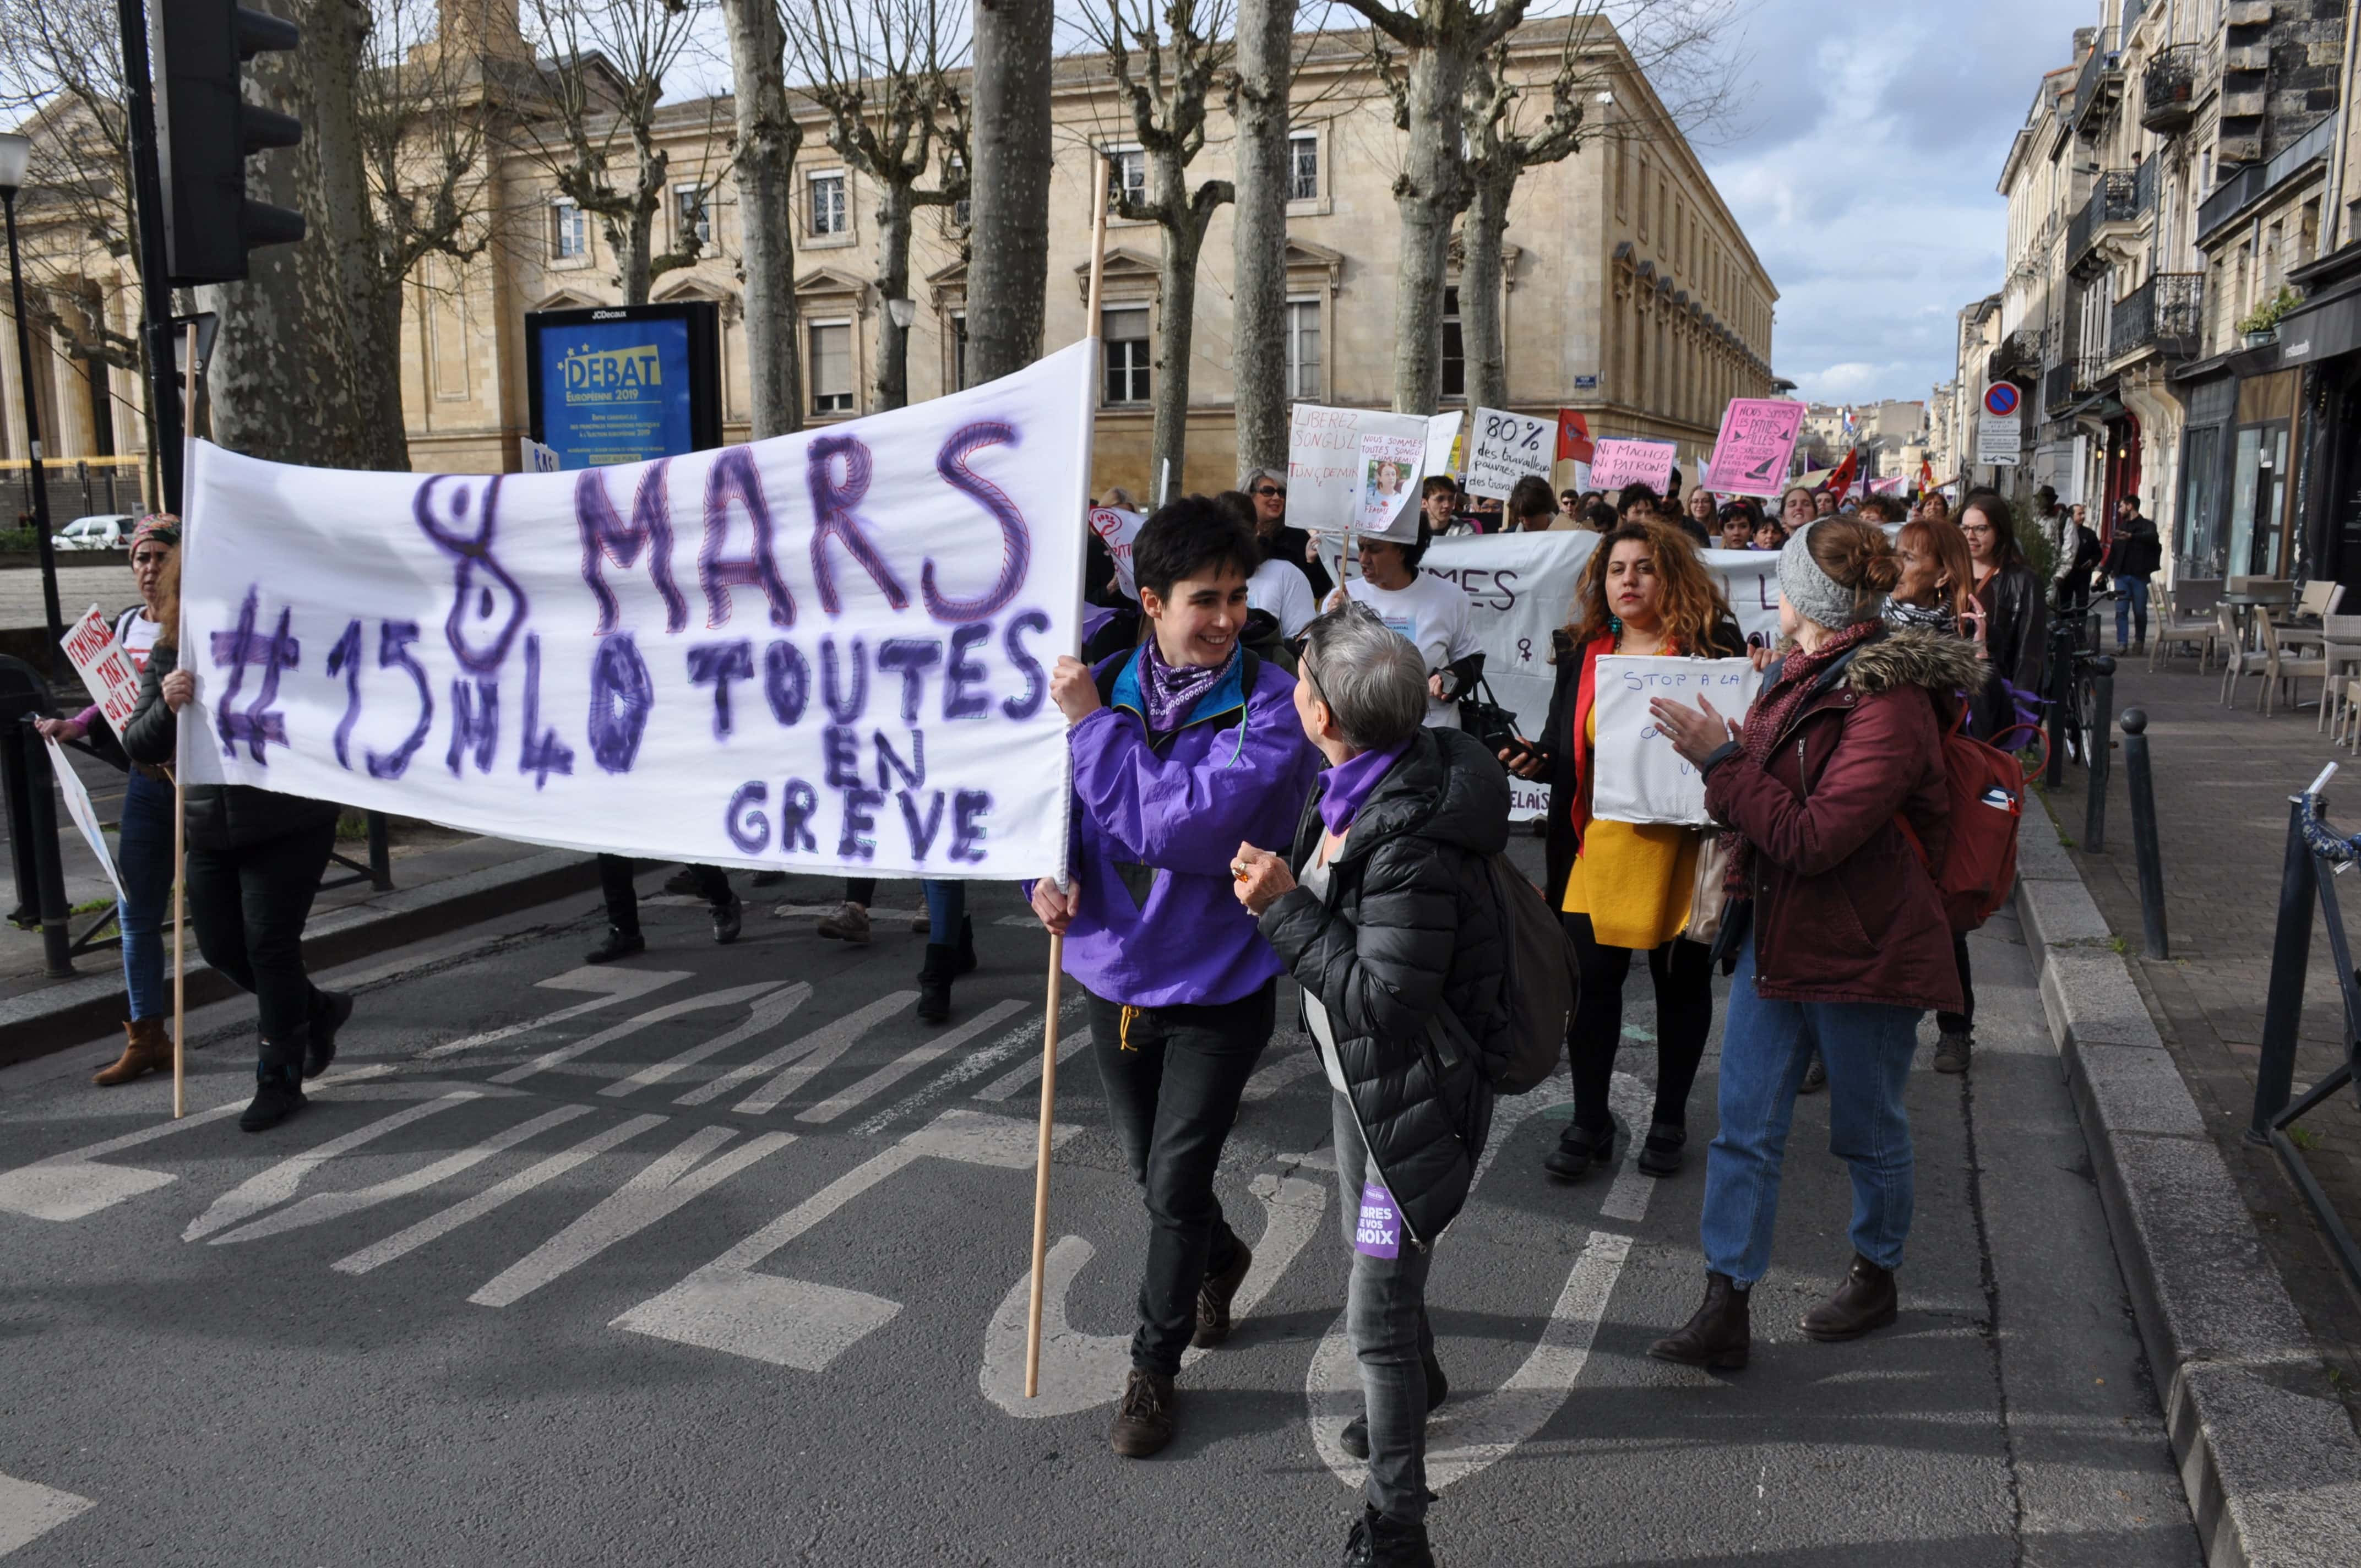 8 mars : Les Bordelaises dans la rue pour faire entendre leurs droits